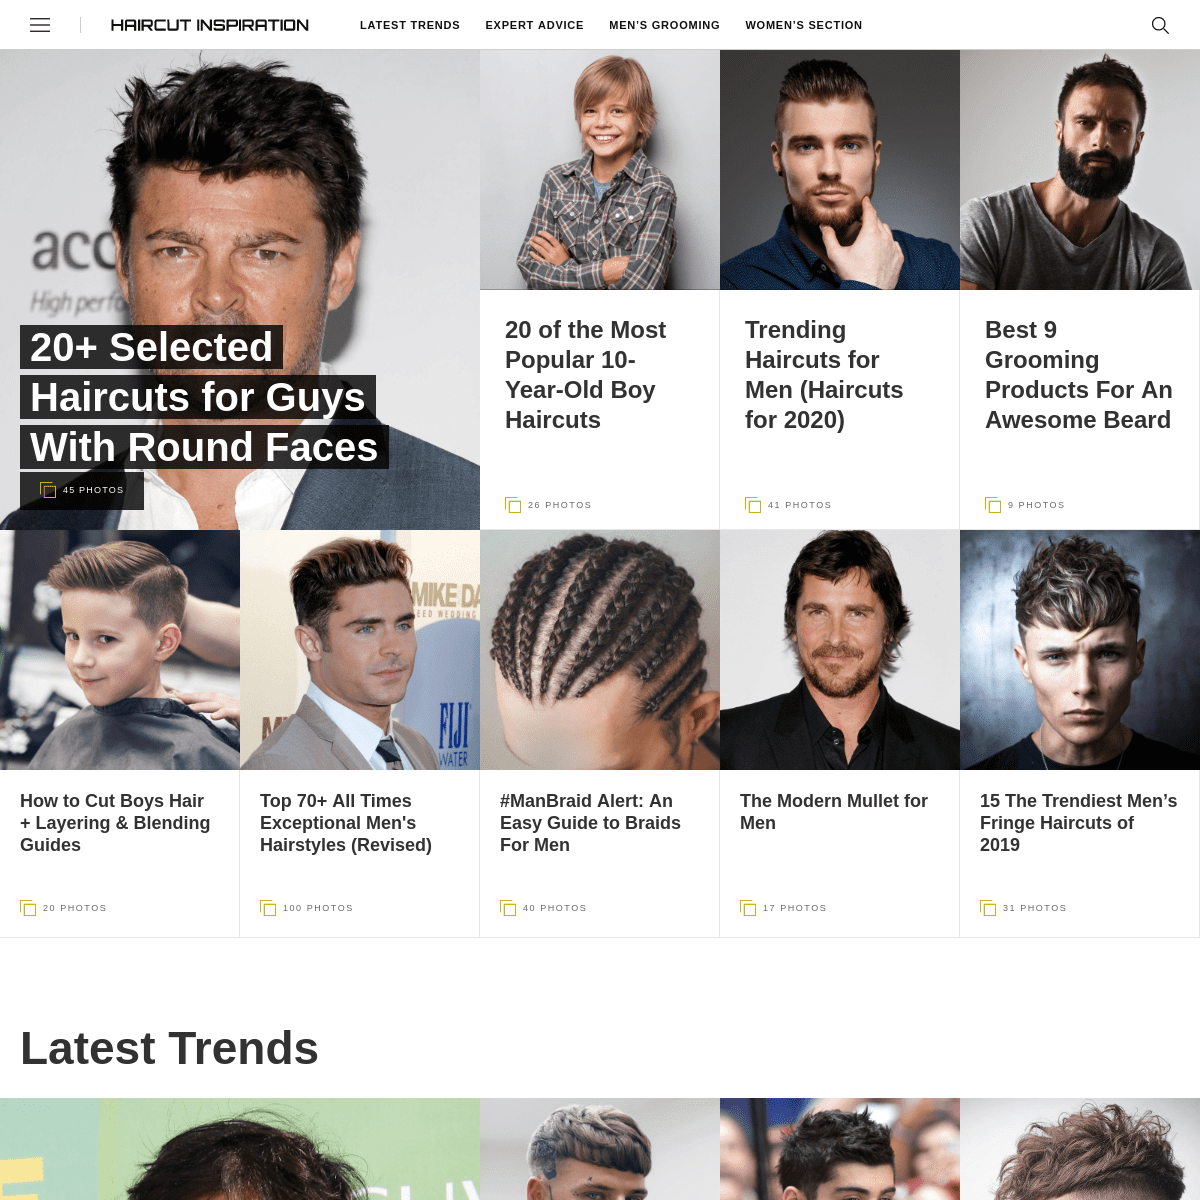 A complete backup of haircutinspiration.com